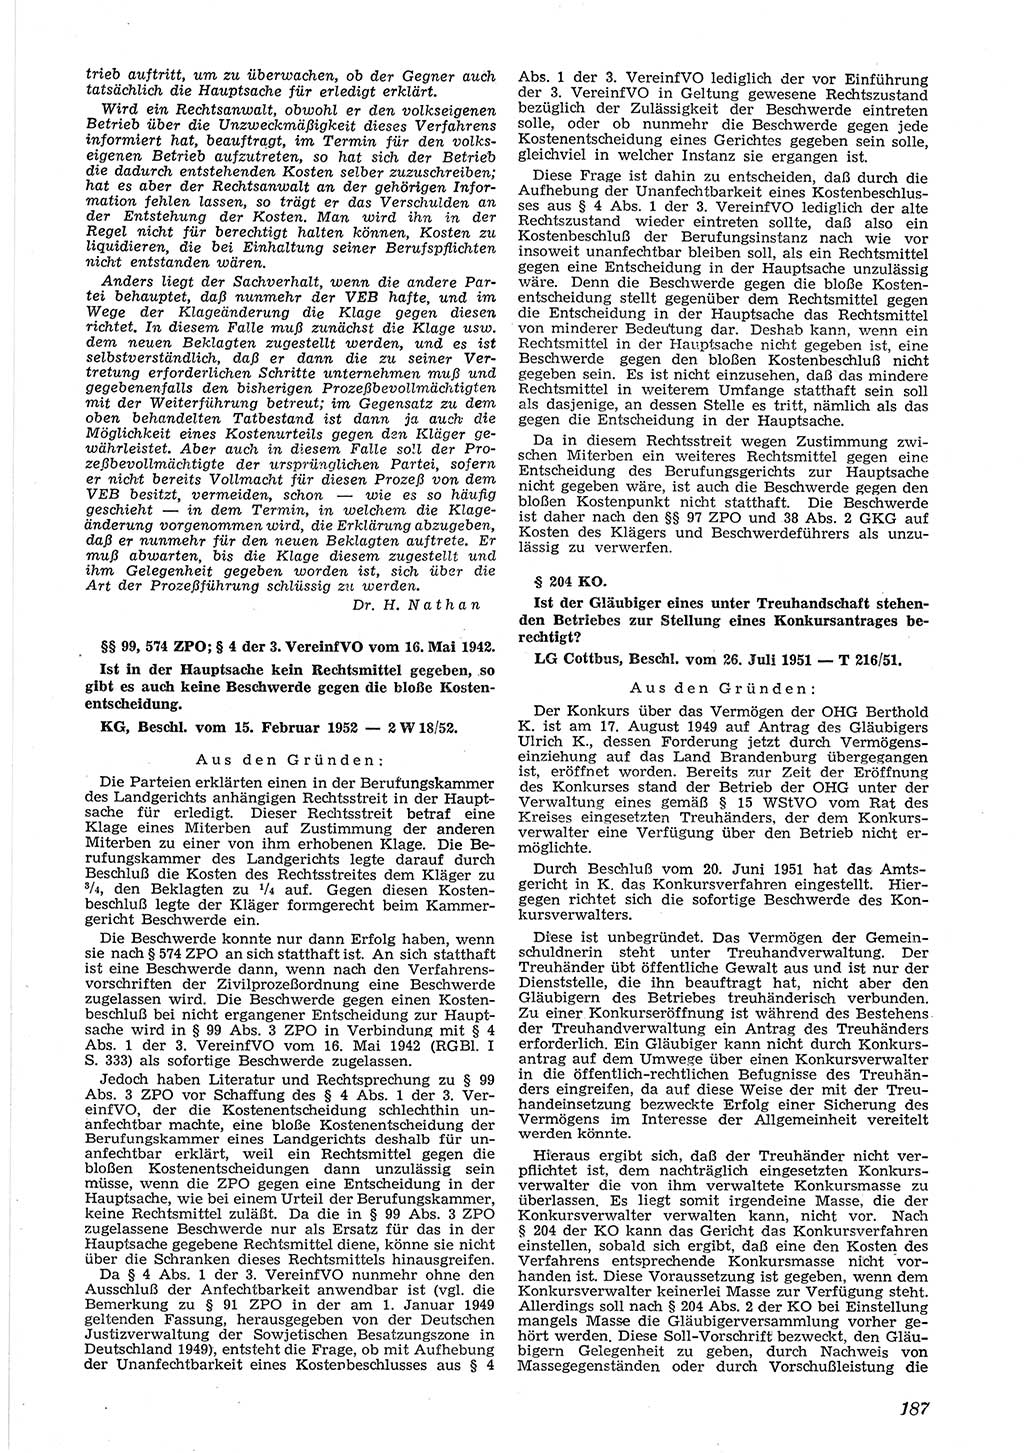 Neue Justiz (NJ), Zeitschrift für Recht und Rechtswissenschaft [Deutsche Demokratische Republik (DDR)], 6. Jahrgang 1952, Seite 187 (NJ DDR 1952, S. 187)